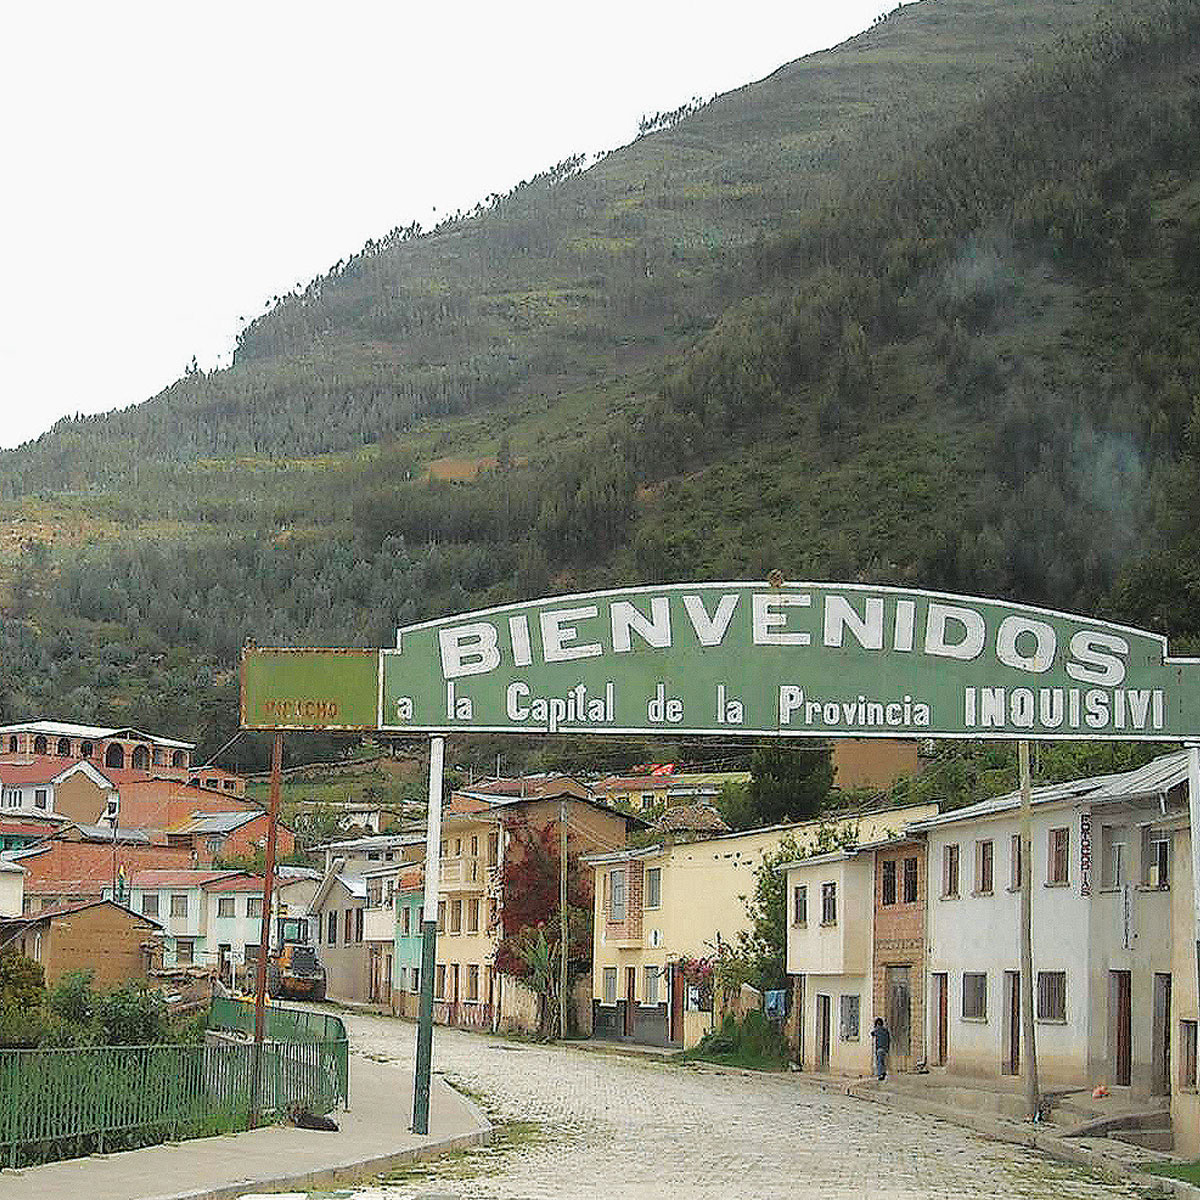 Rinden homenaje a las provincias Inquisivi y Camacho y al municipio de Desaguadero del departamento de La Paz